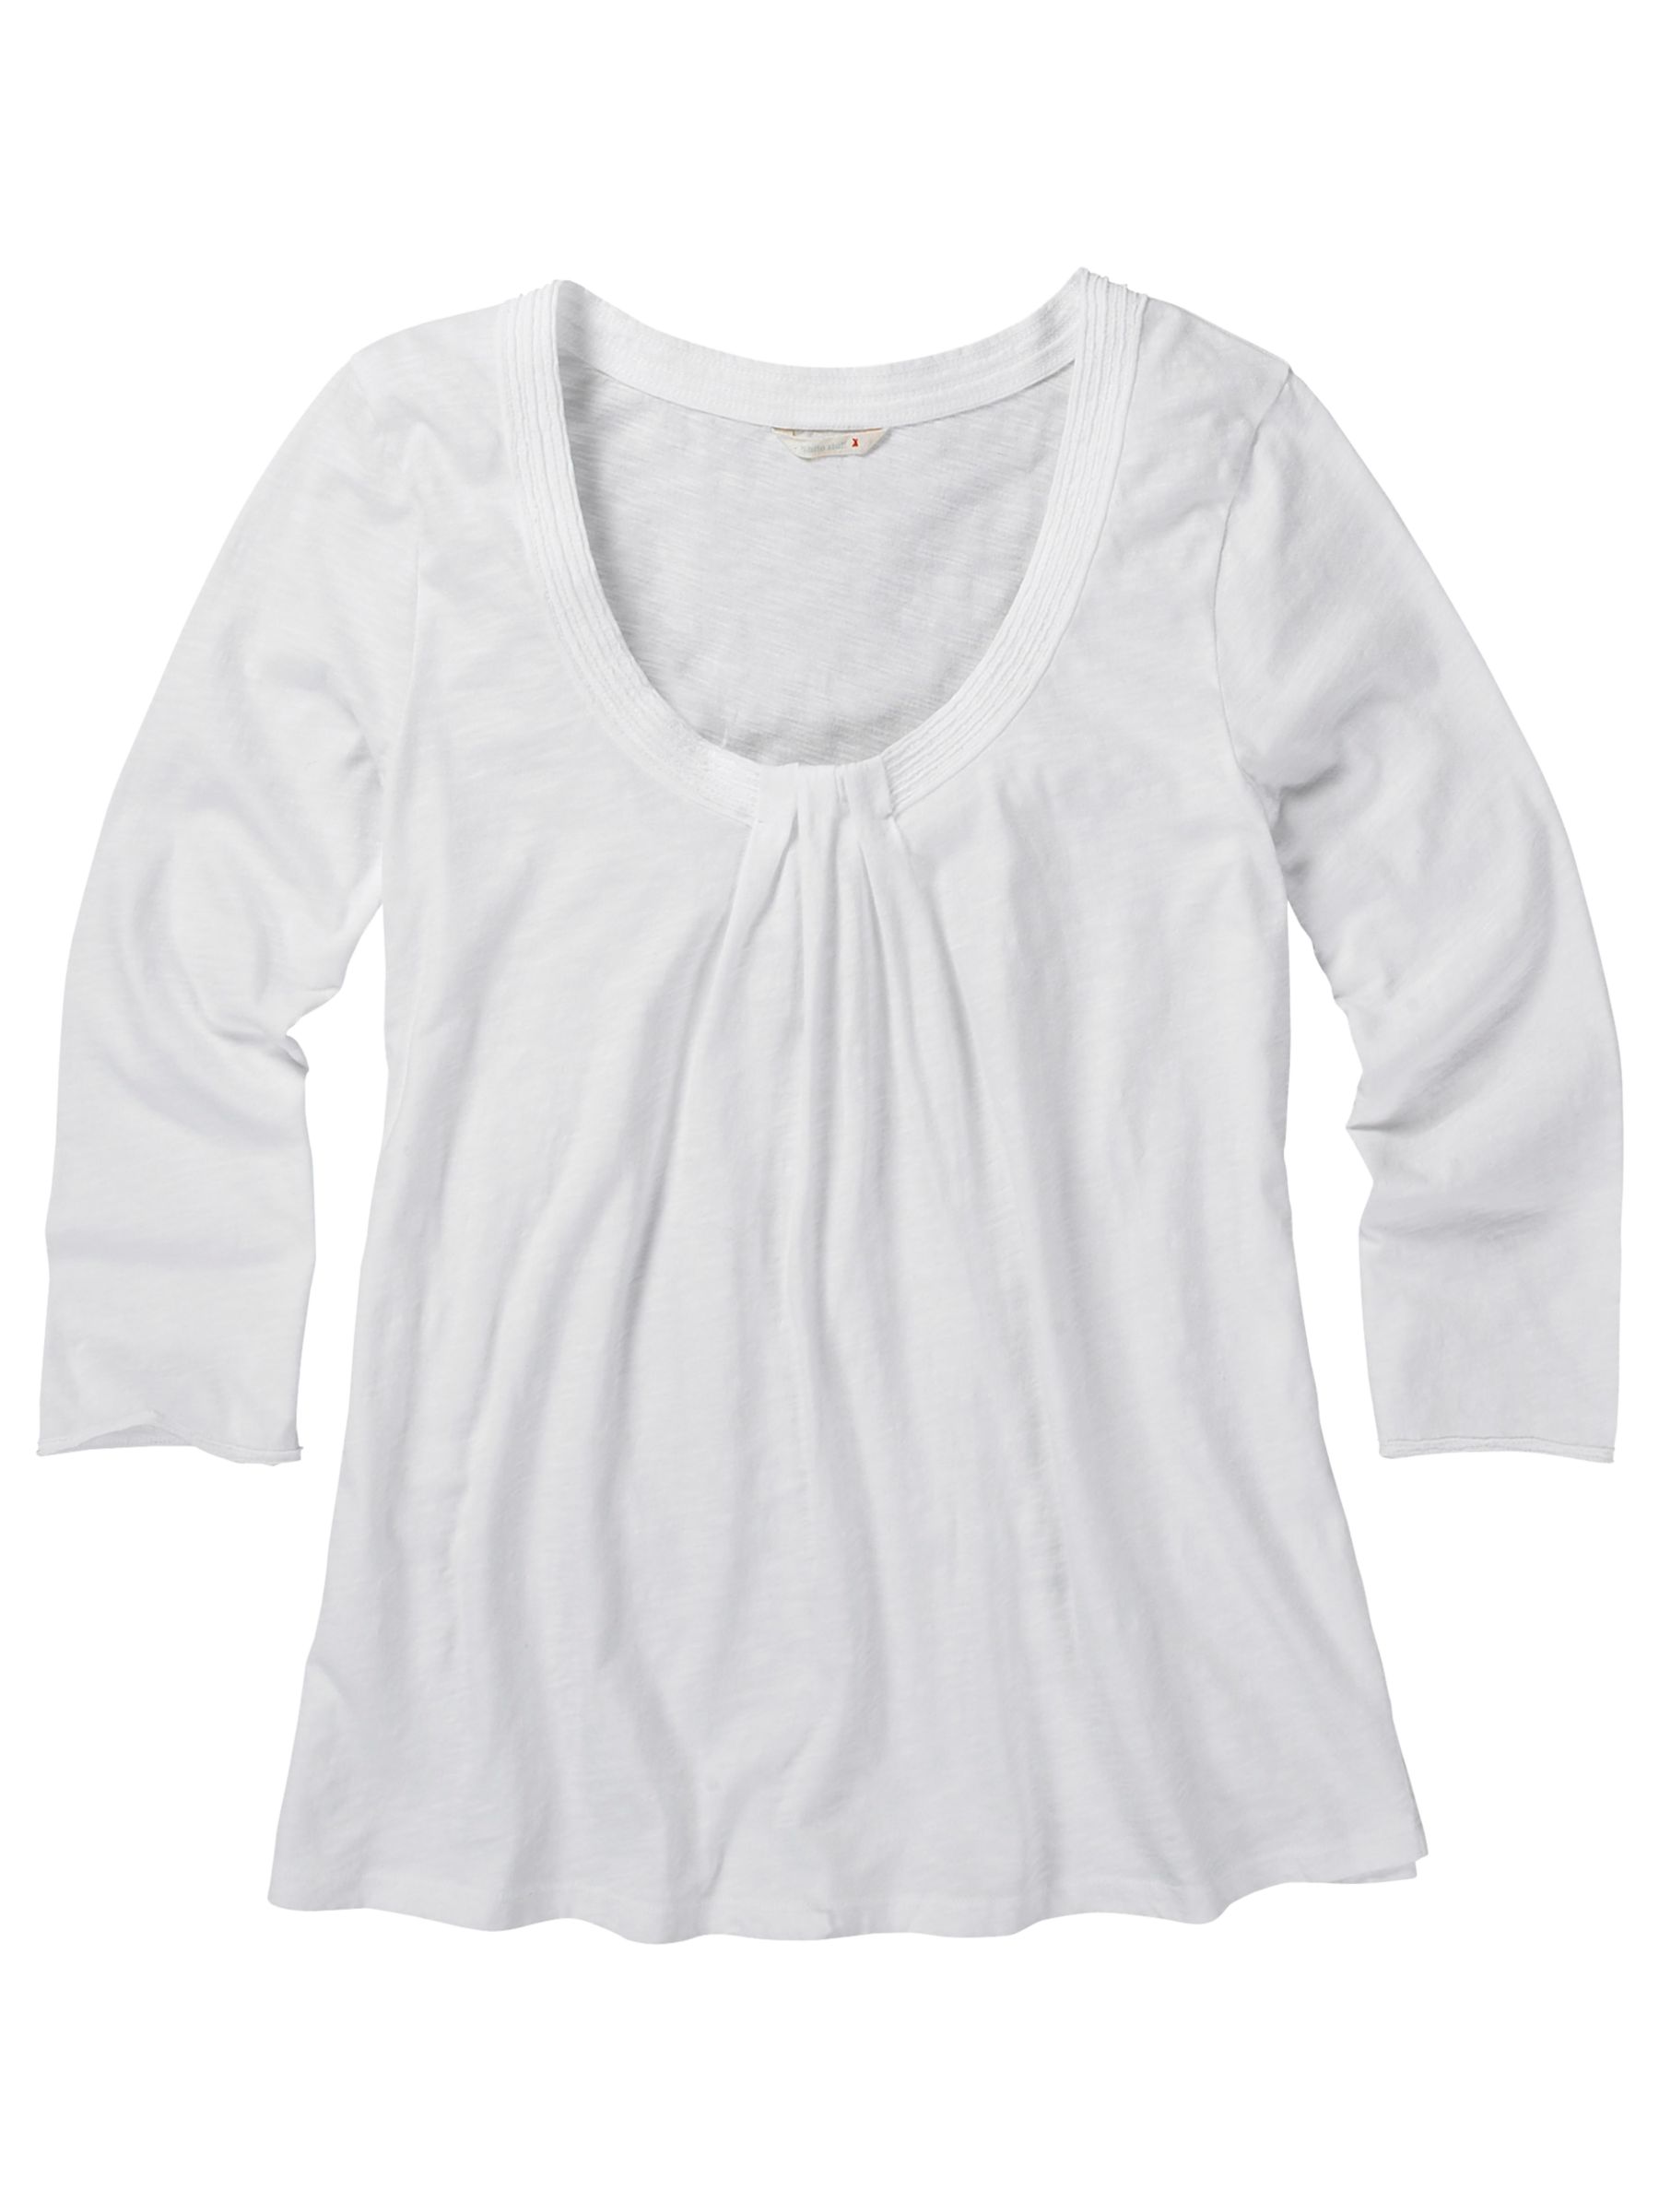 Flighty T-Shirt, White